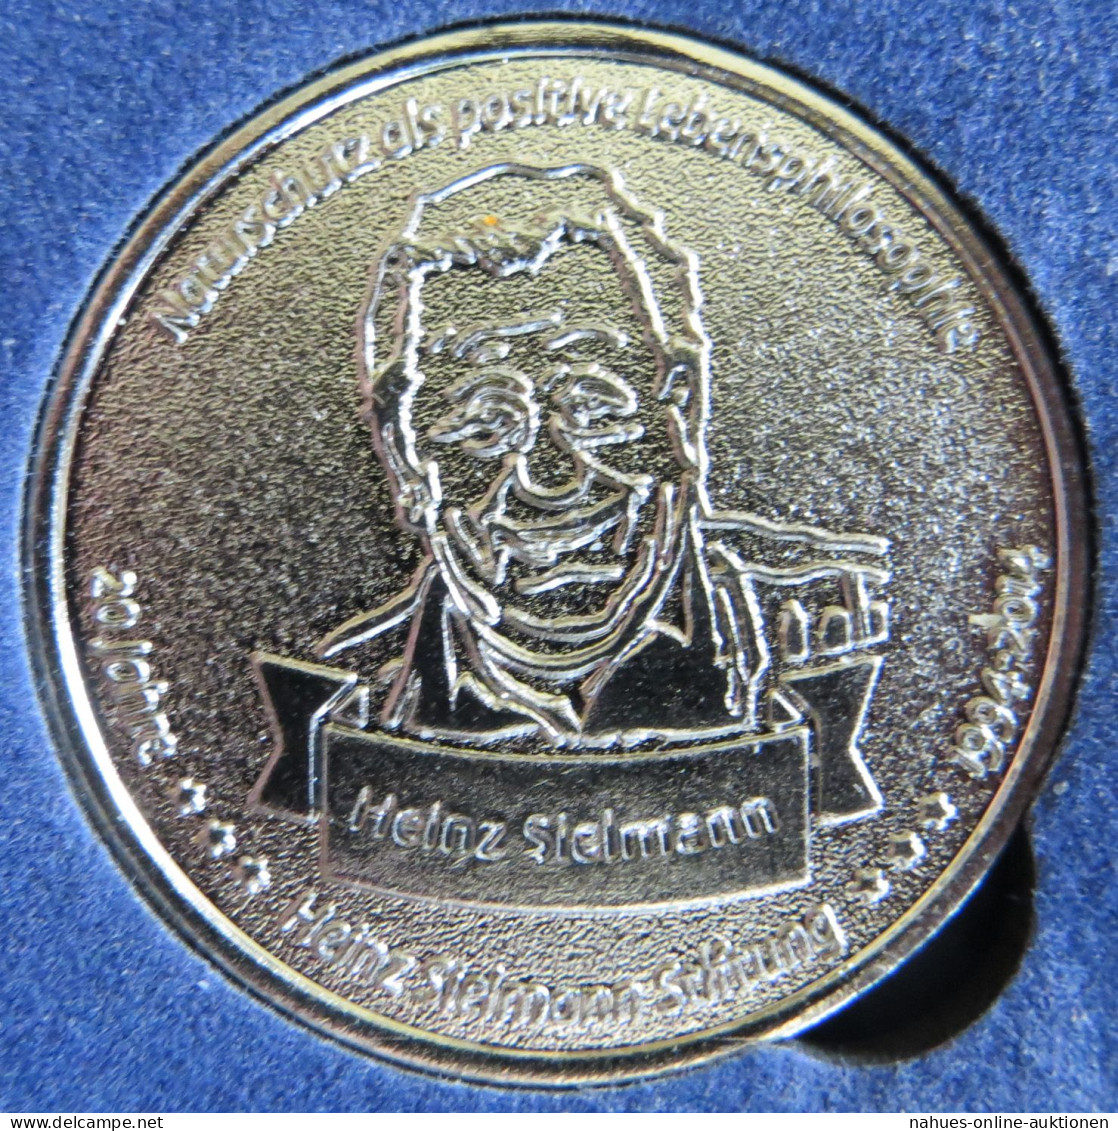 Münze Medaille Deutschland 2014 20 Jahre Heinz-Sielmann-Stiftung Vz - Commemorations